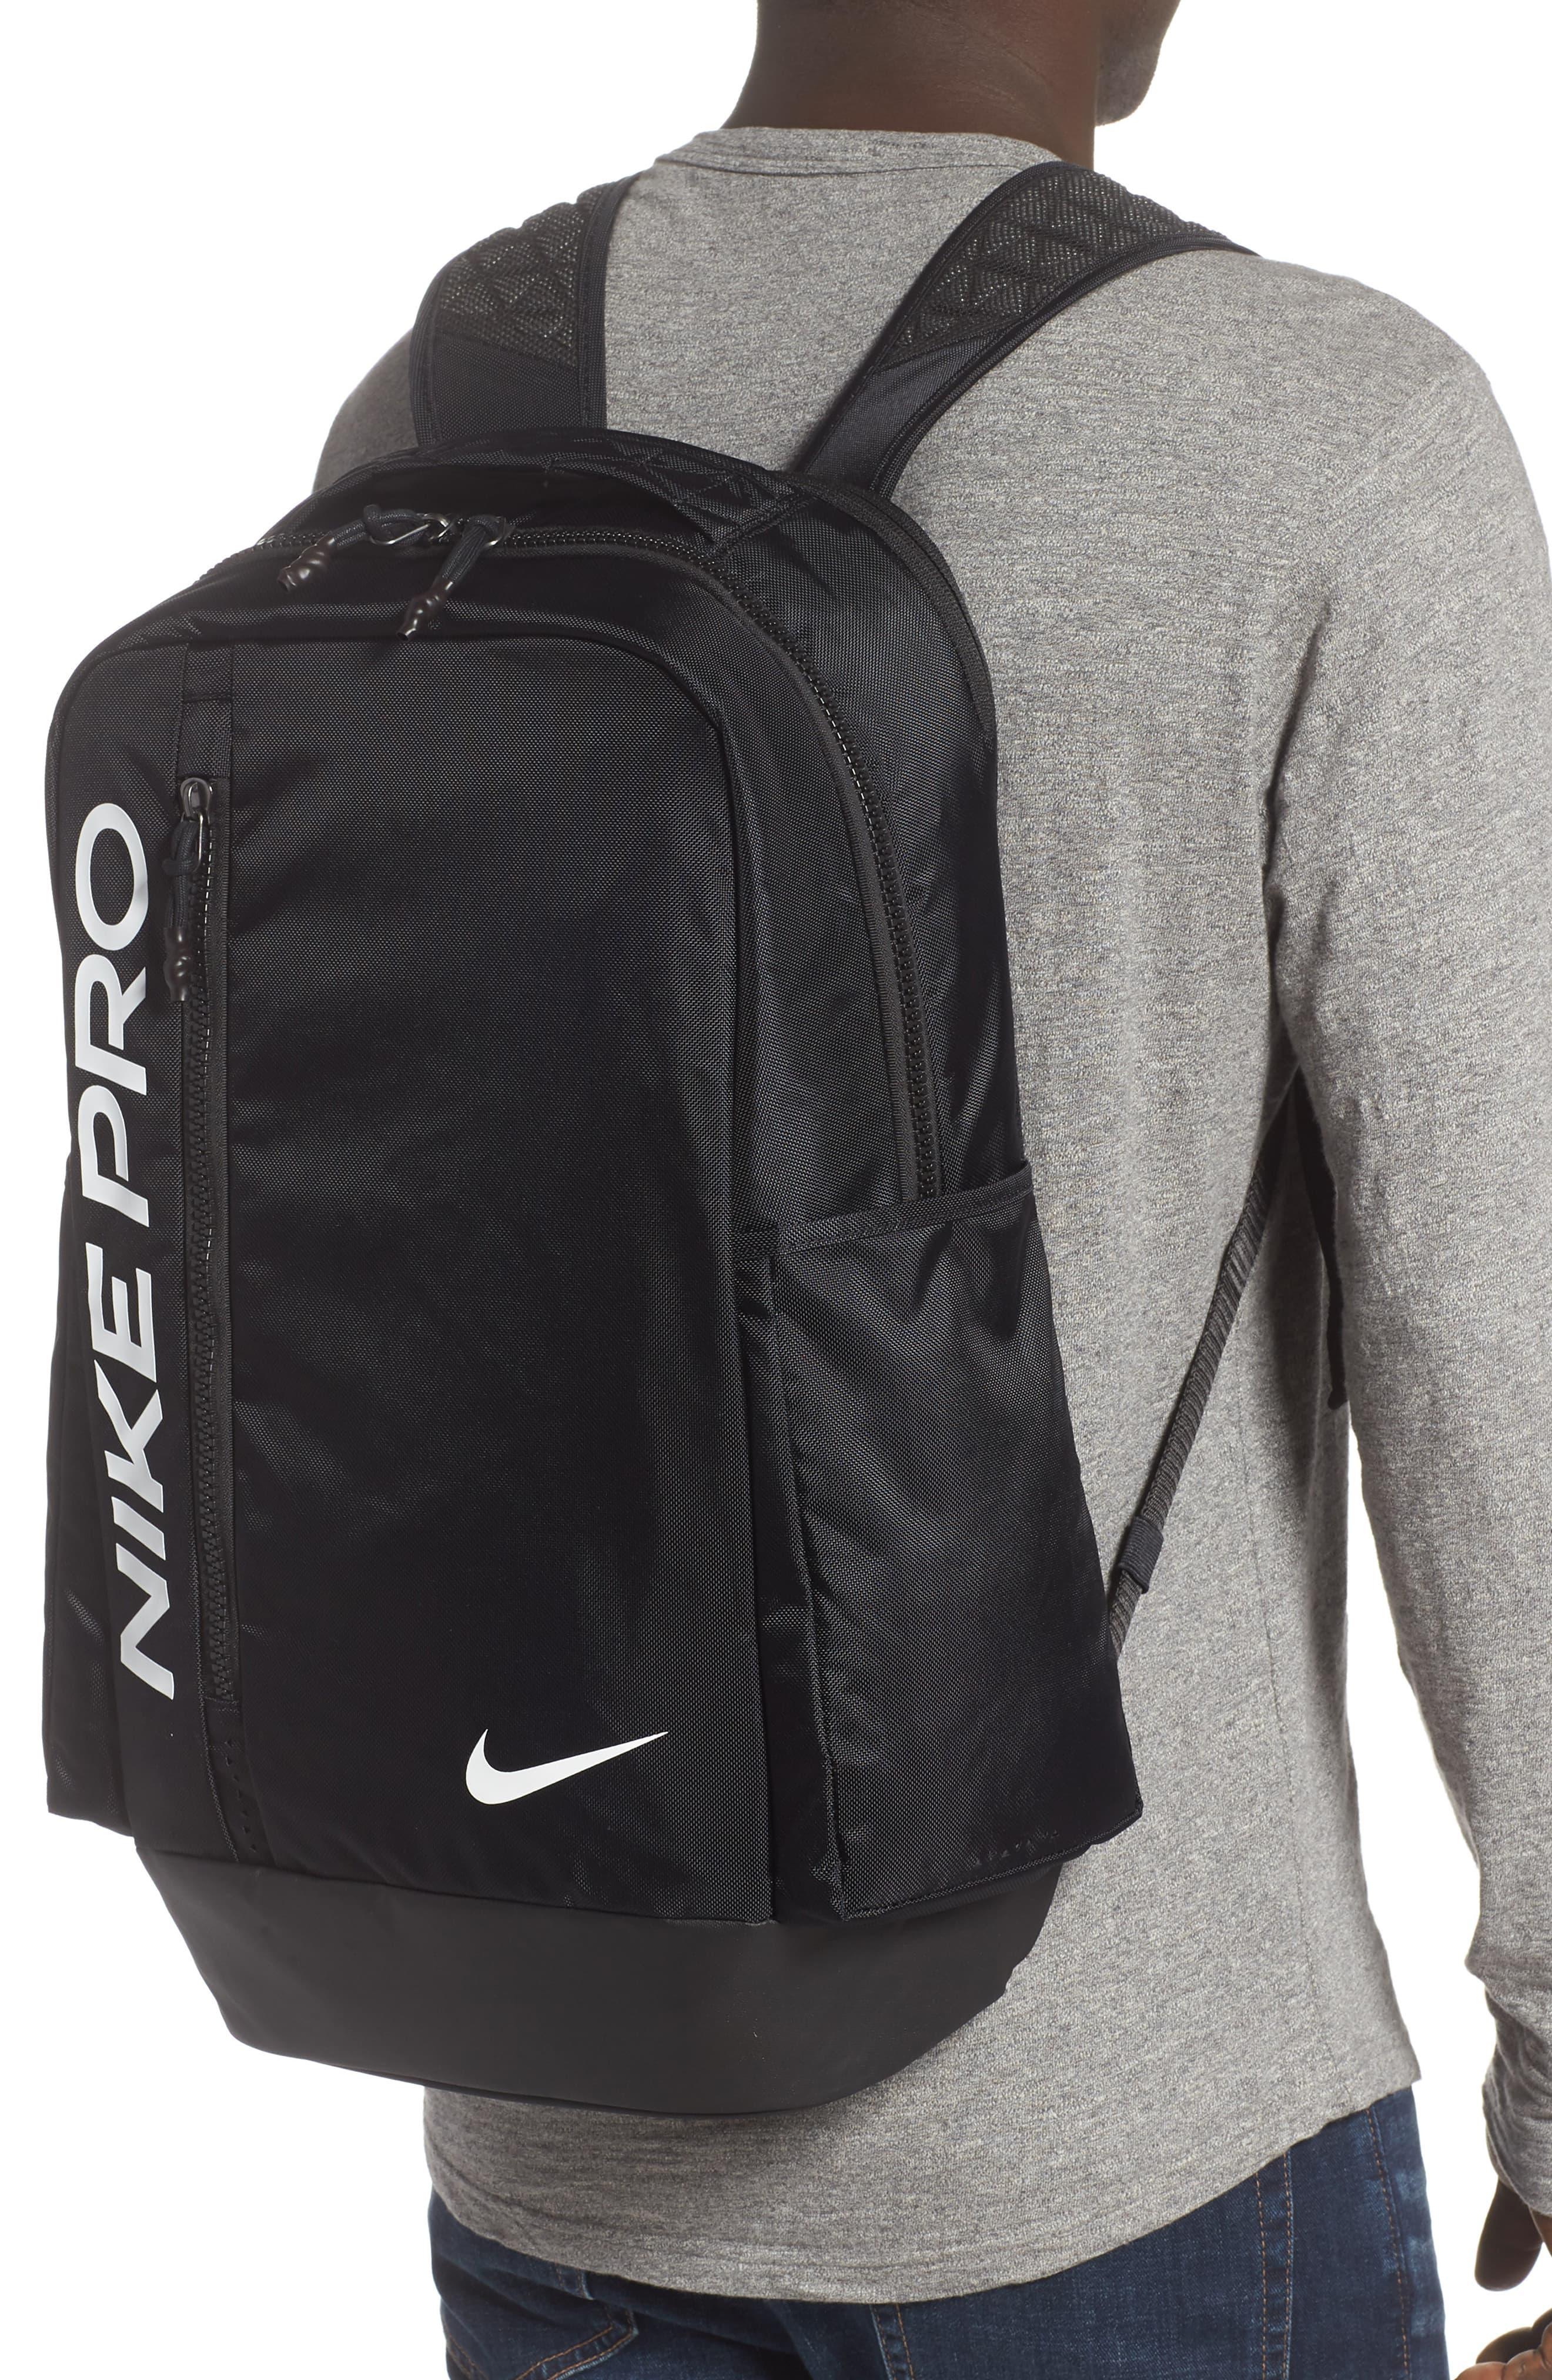 Nike Vapor Power Graphic Training Backpack new SAVE 55% - highlandske.com